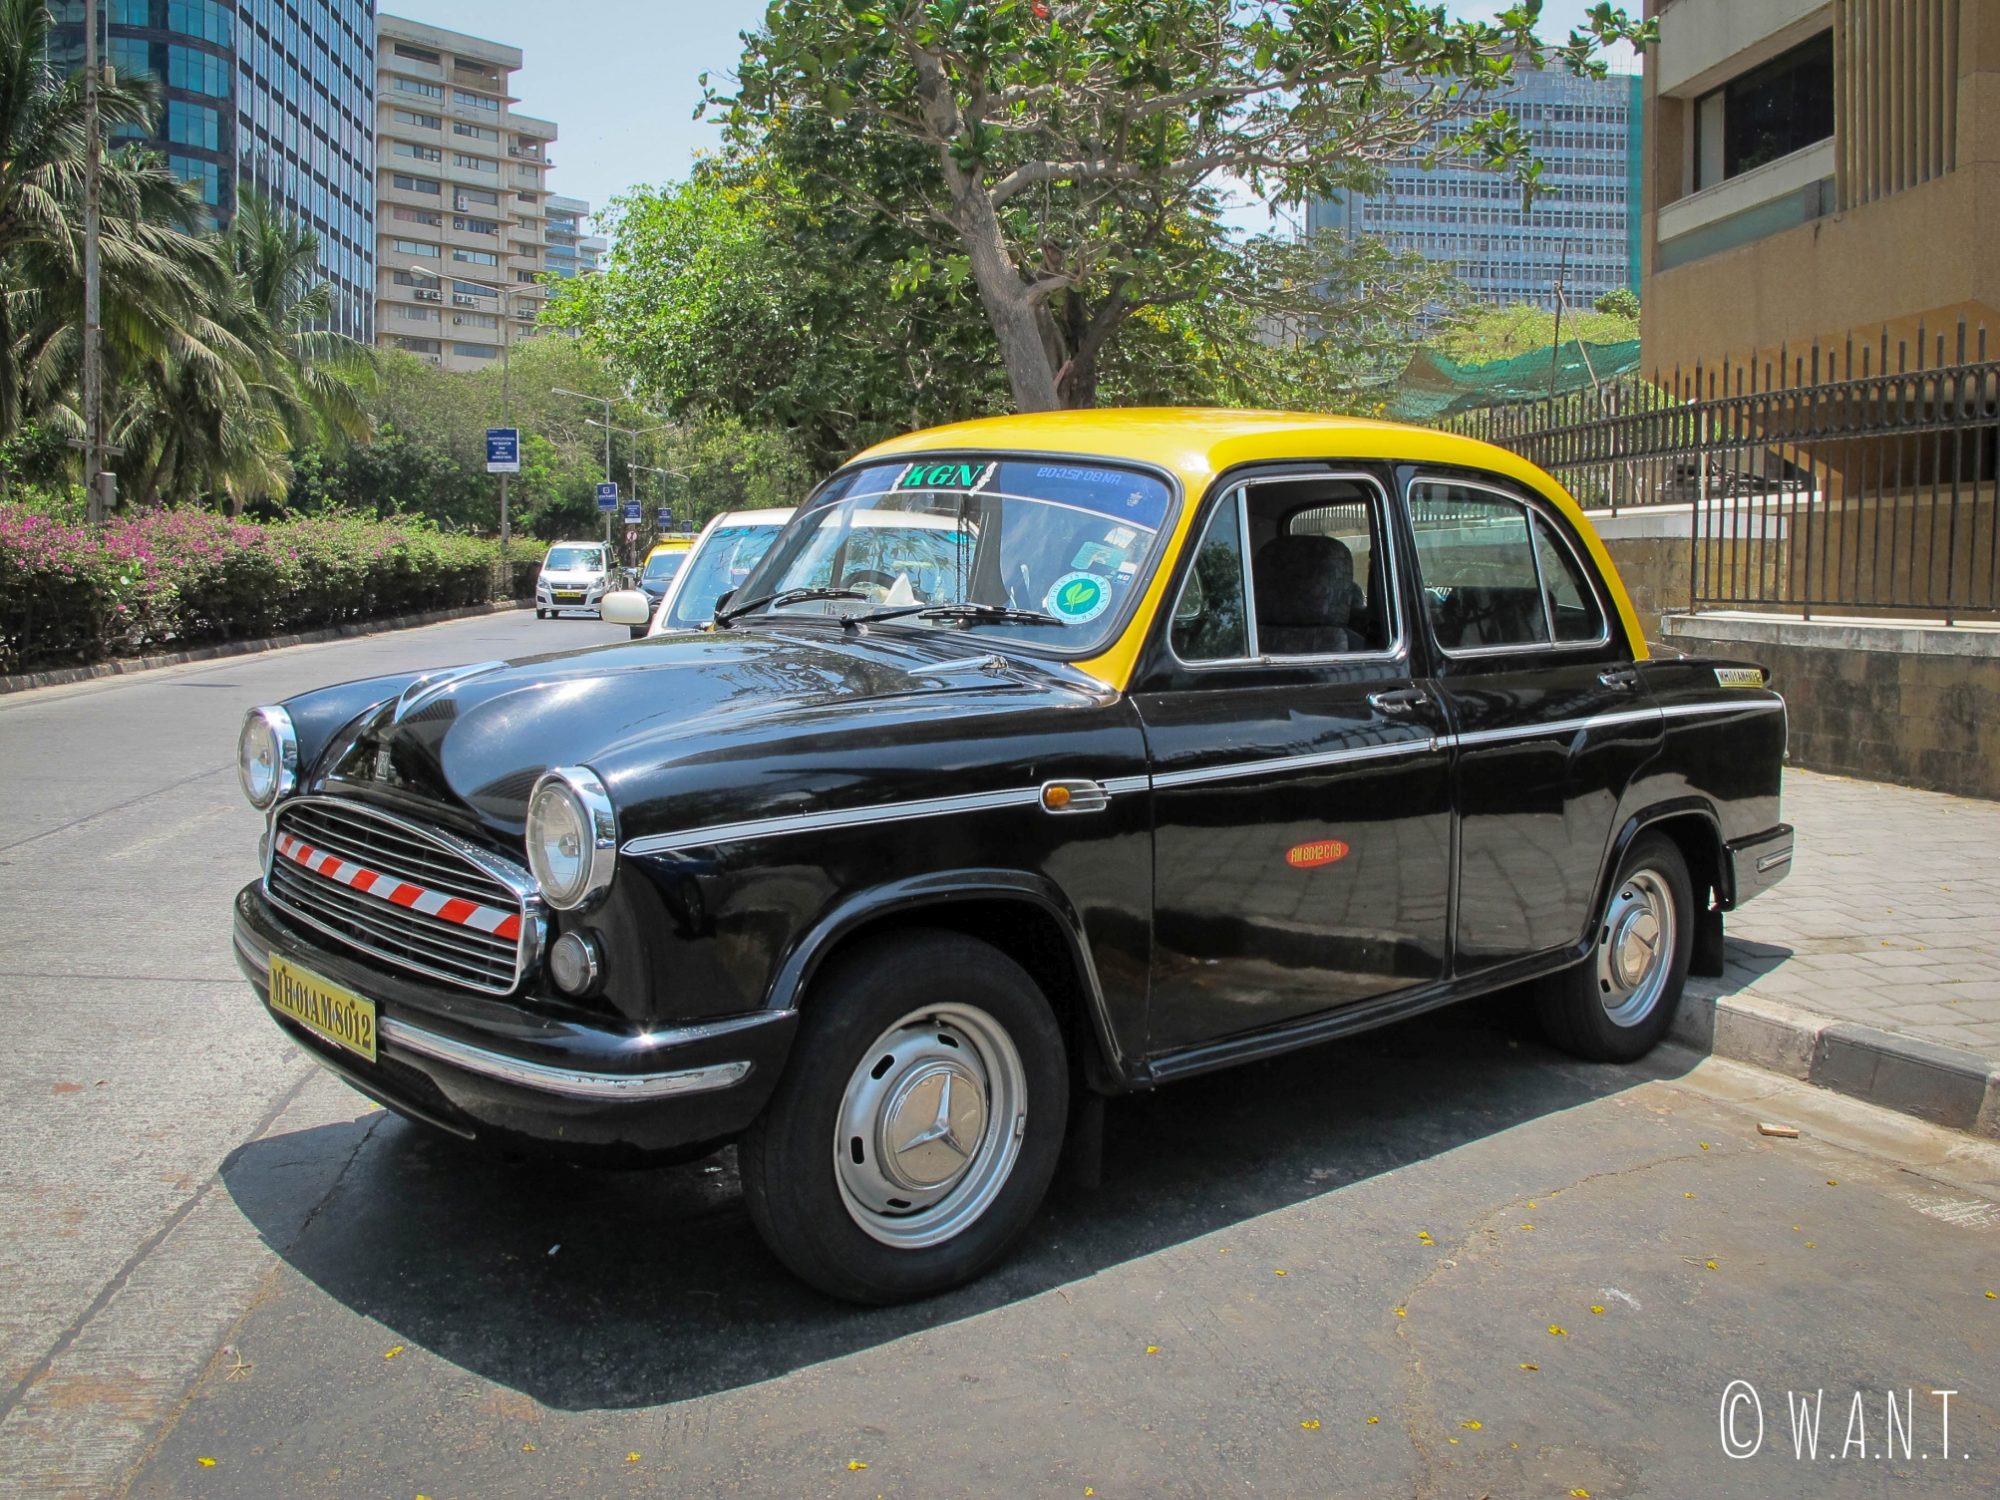 Taxi de Mumbai dans le quartier des affaires